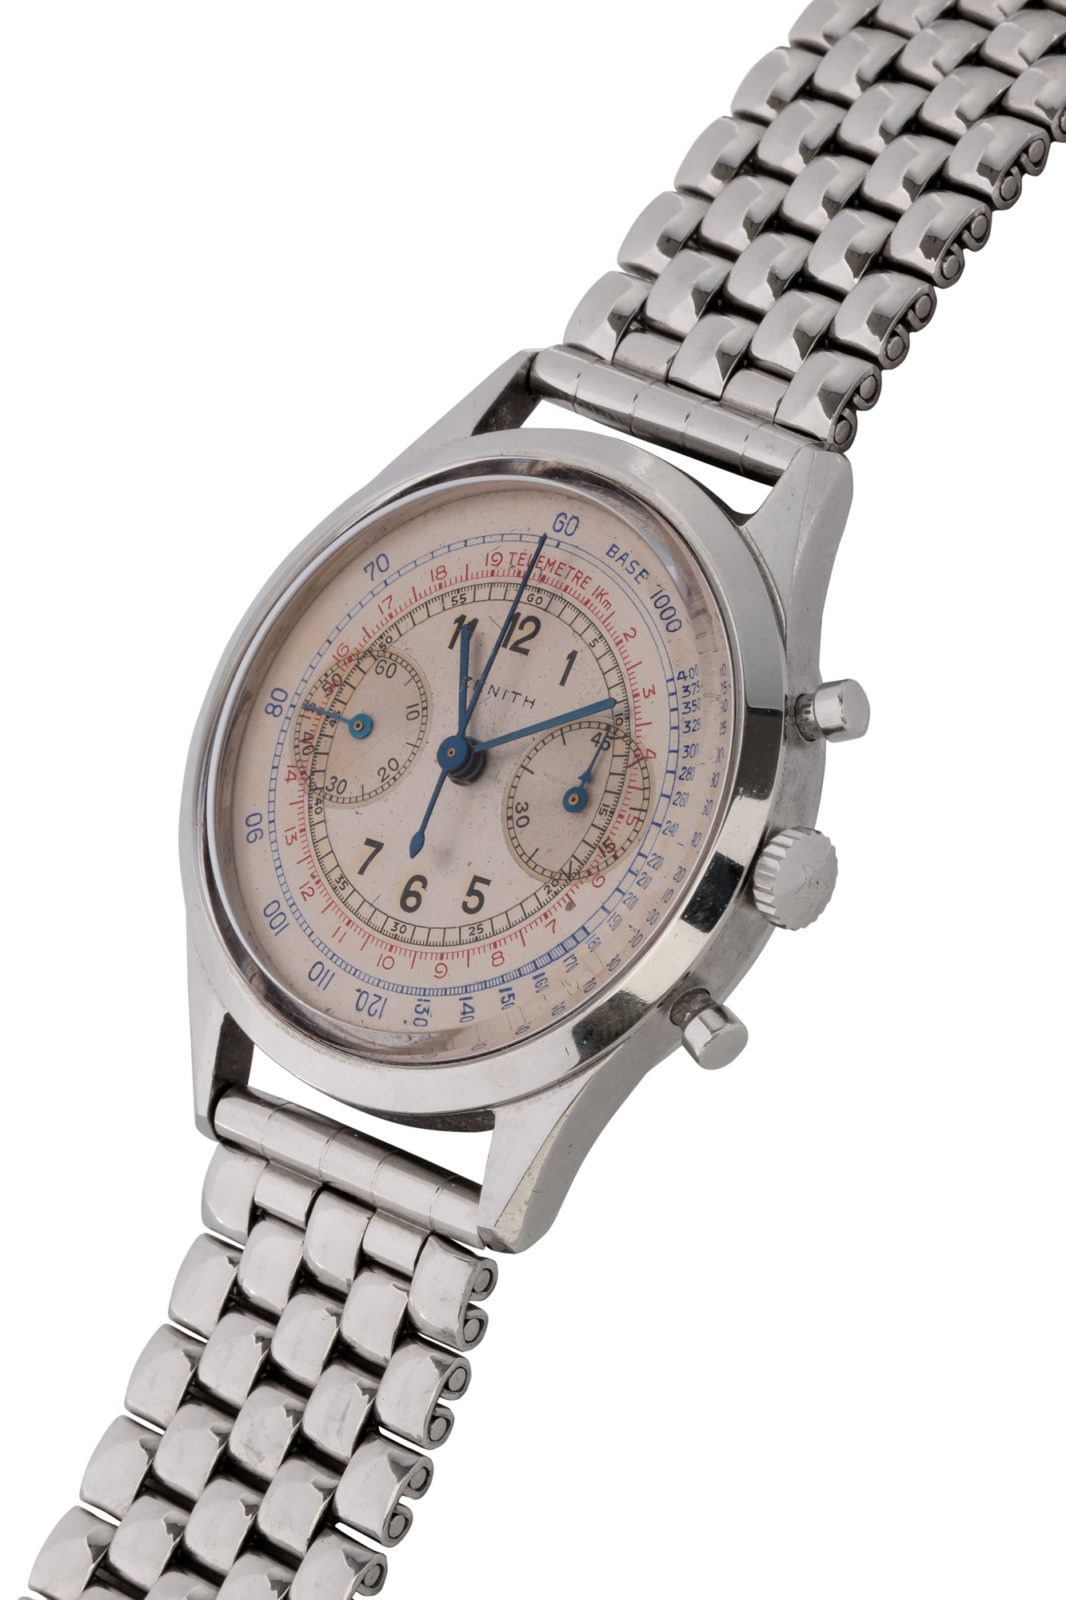 Antiquorum - Vente d'importantes montres récentes et de collection du 10 mai - Chronographe Zenith 136D